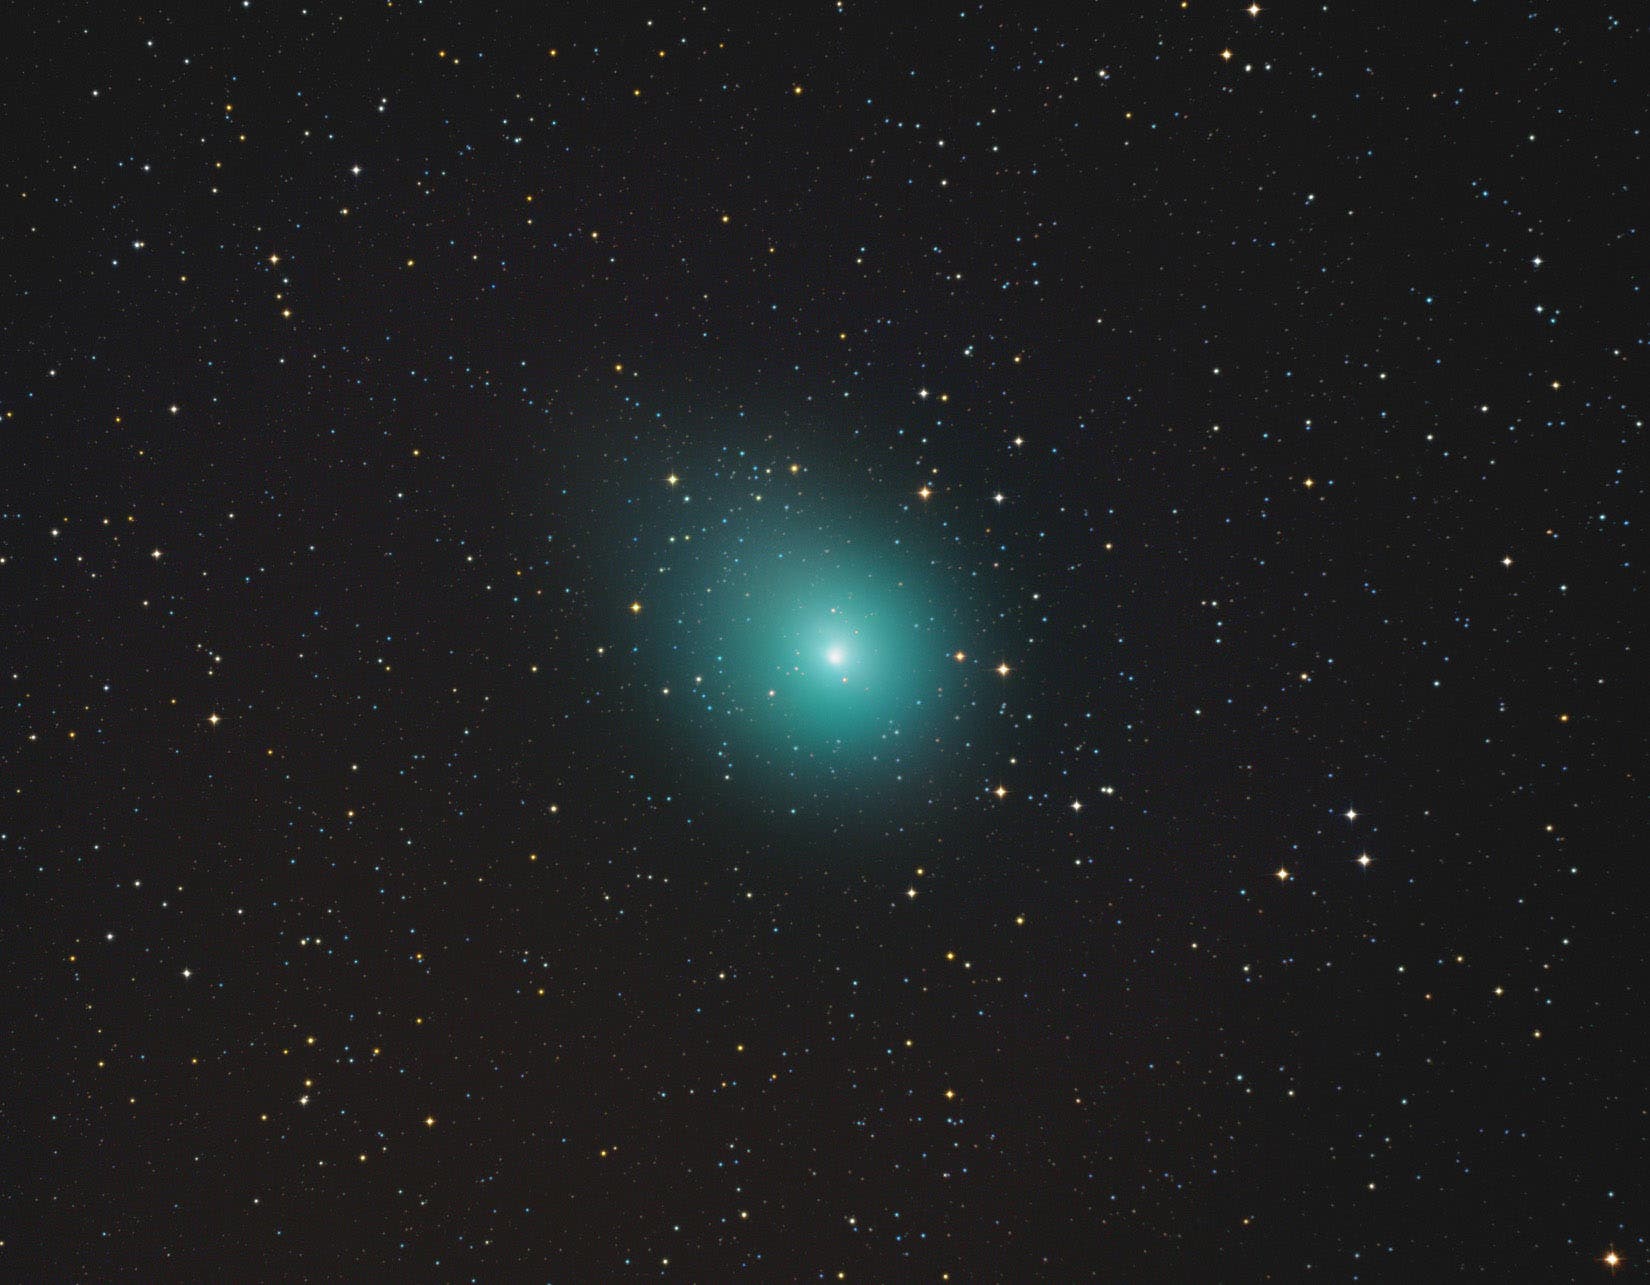 Komet Wirtanen/46P